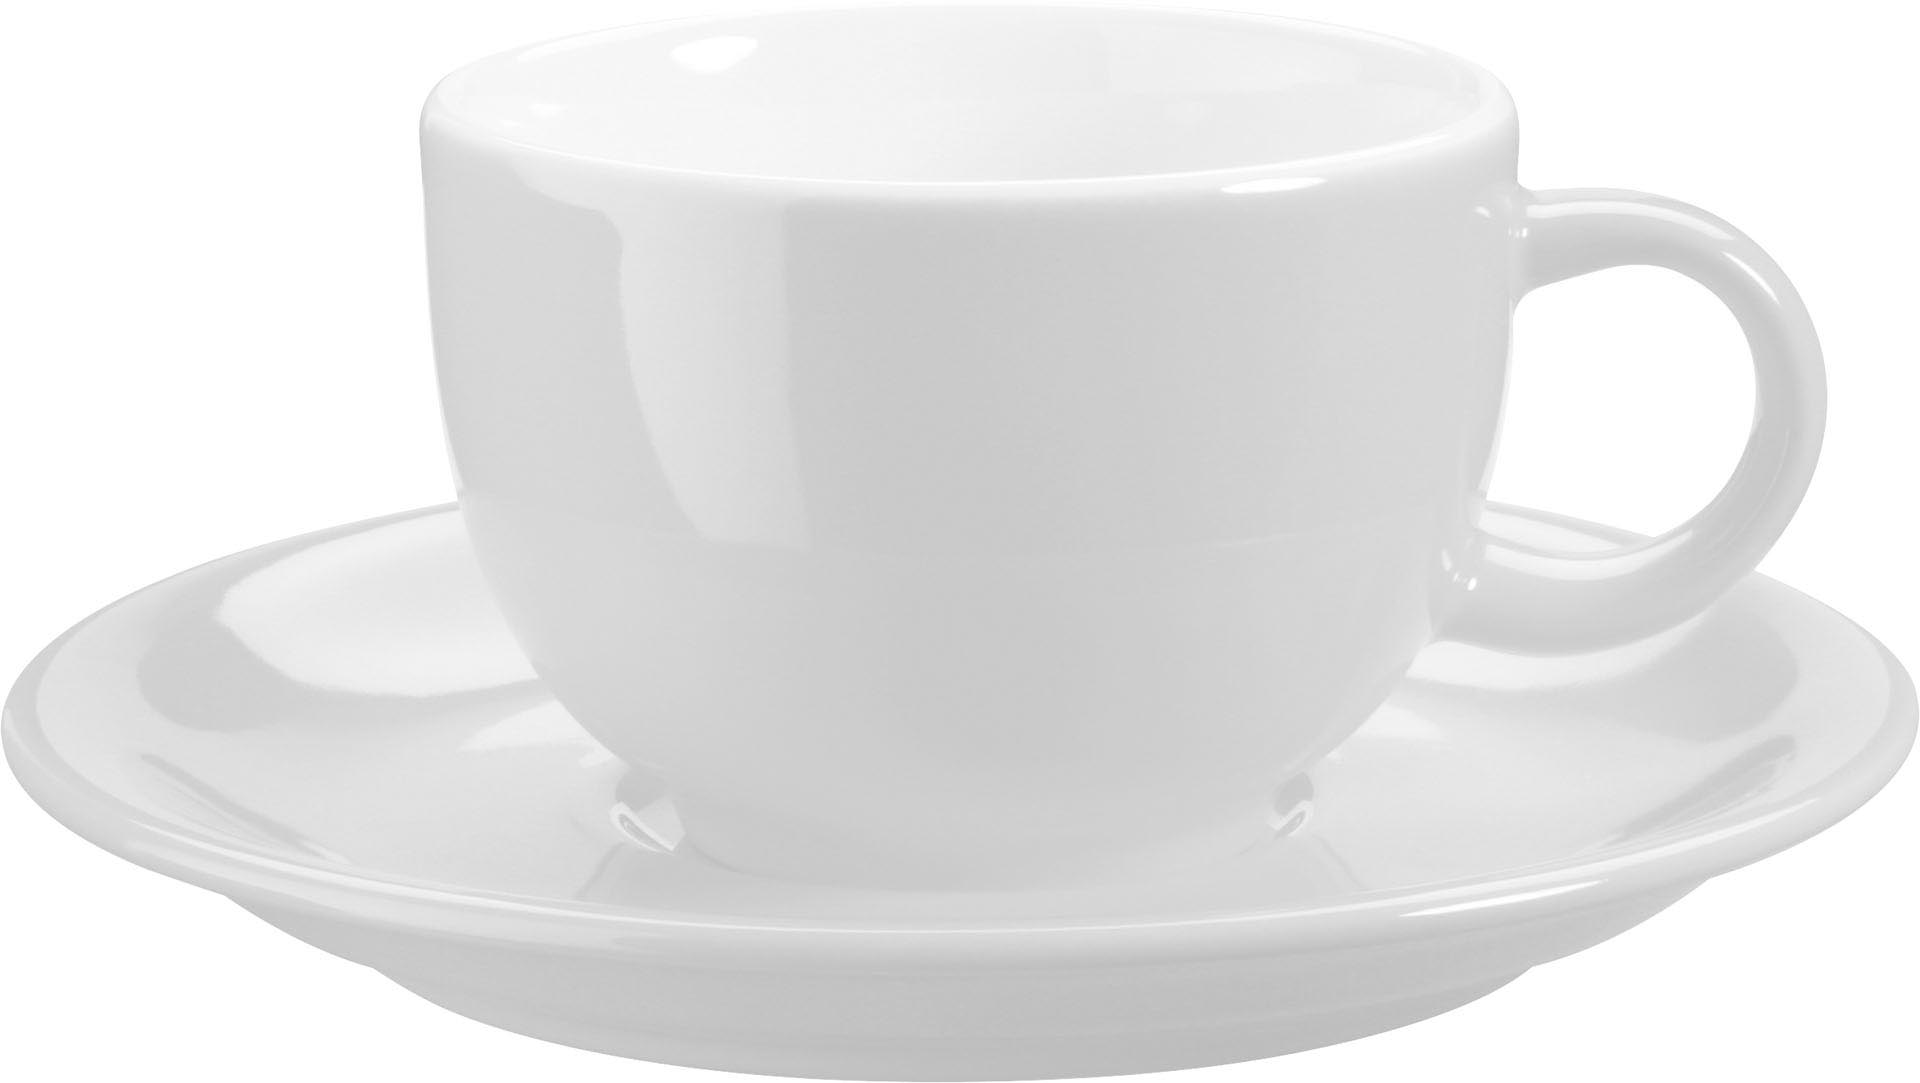 Die perfekte Cappuccino Tasse besitzt die spezielle Form zur Geschmacksentfaltung, das optimale Volumen, ist gerne etwas dickwandiger, besteht aus hochwertigem Porzellan und besitzt eine passende Untertasse. Fertig ist das perfekte Cappuccino Erlebnis.&nbsp;&nbsp;